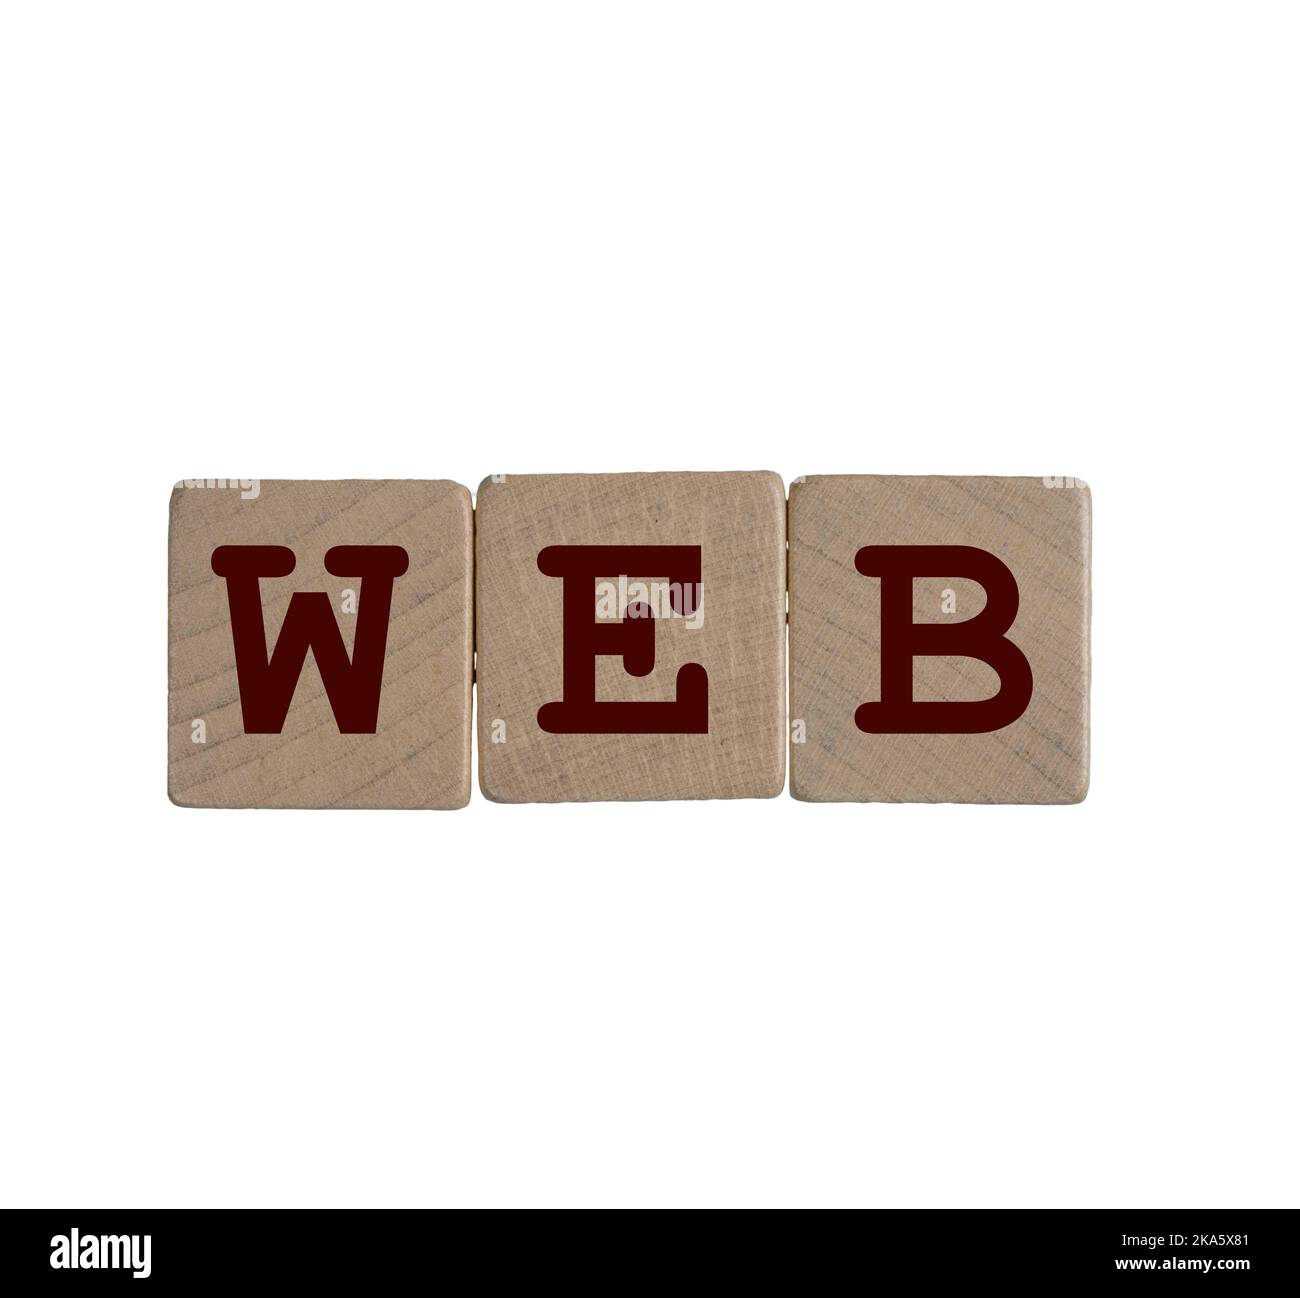 Le mot Web formé avec des chevilles en bois sur un fond transparent Banque D'Images